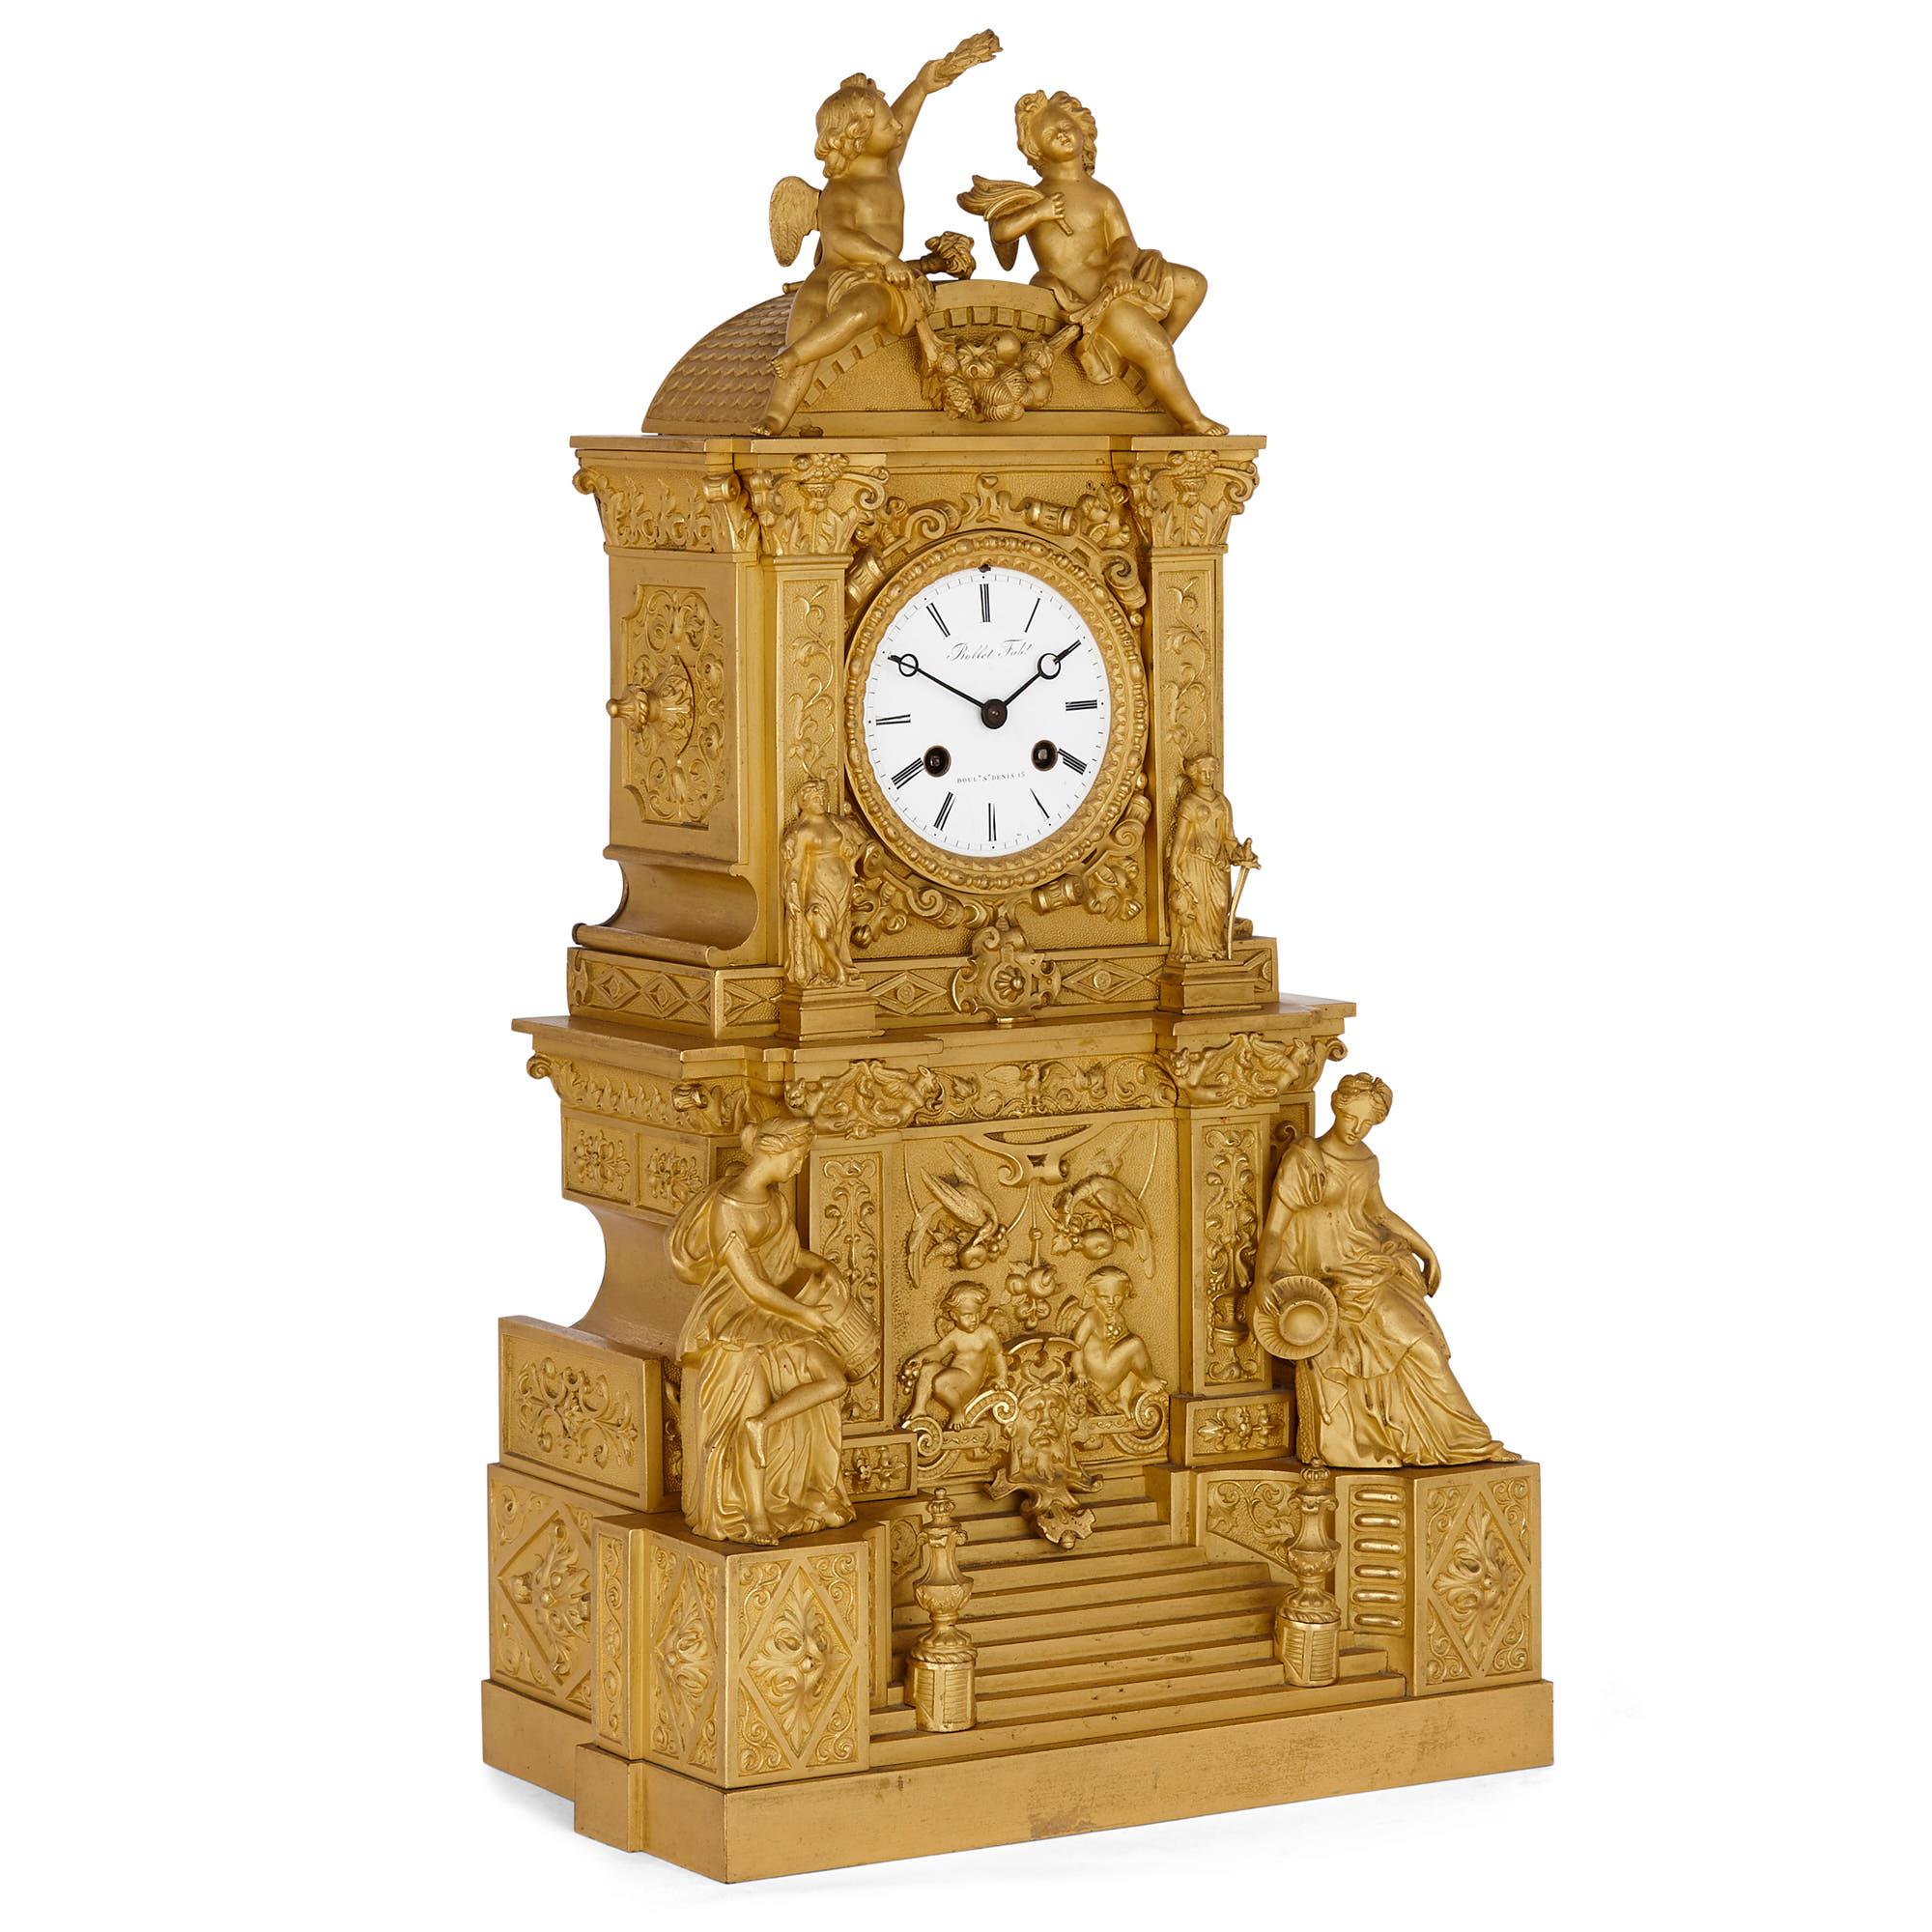 Pendule de cheminée en bronze doré de forme architecturale française
Français, 19ème siècle
Hauteur 52cm, largeur 28cm, profondeur 17cm

Cette magnifique horloge de cheminée de style baroque est fabriquée en bronze doré. Le boîtier très détaillé